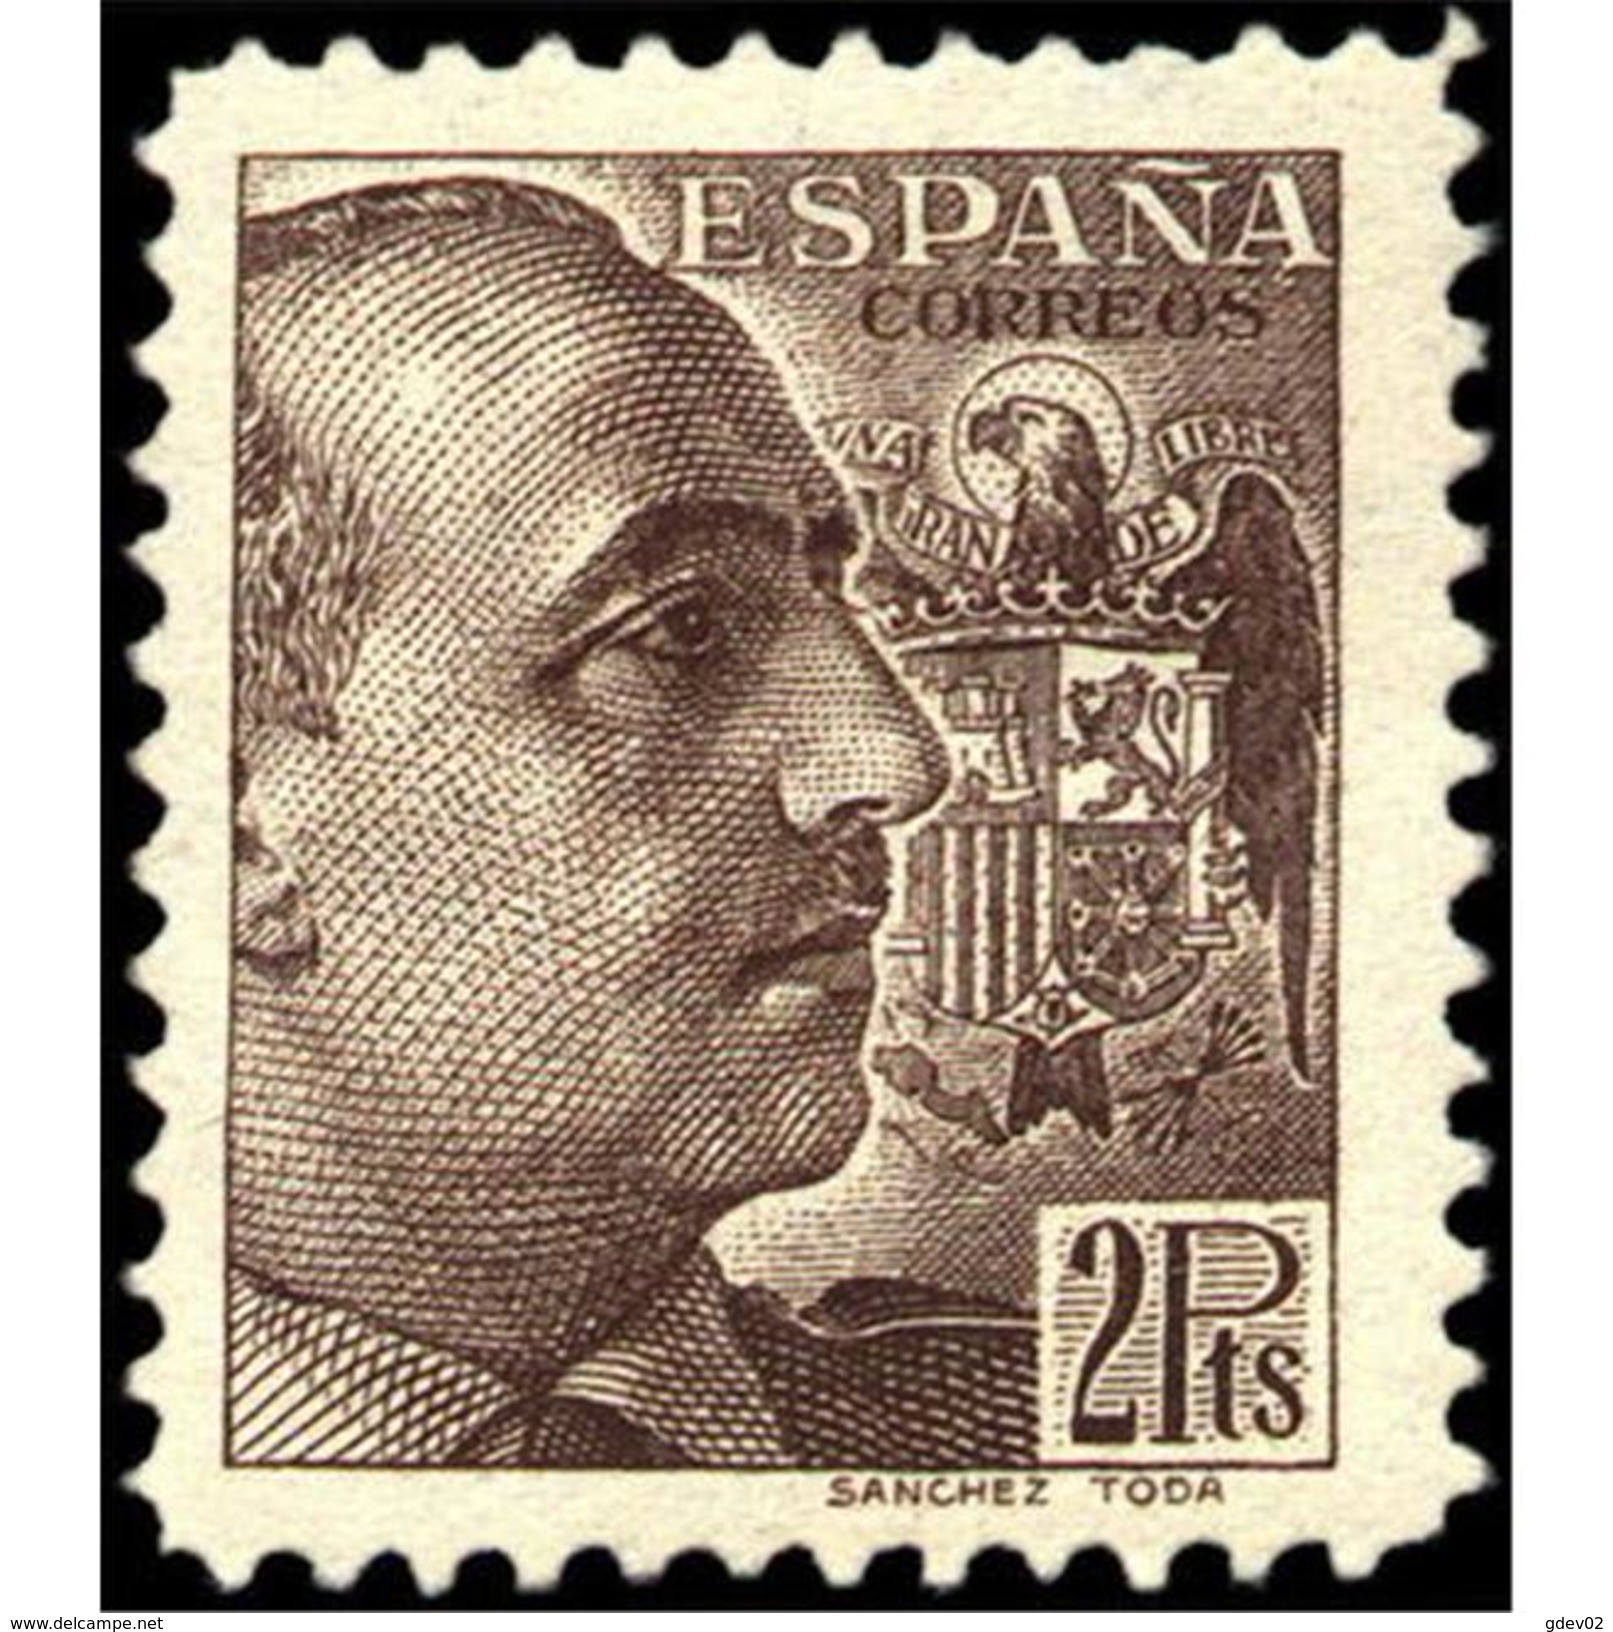 ES876SASF-LPC-LTAN.Spain.Esgane .Militar,politico.FRANCO Sanchez Toda.Dentado Grueso.1939.(Ed 876**) - Nuevos